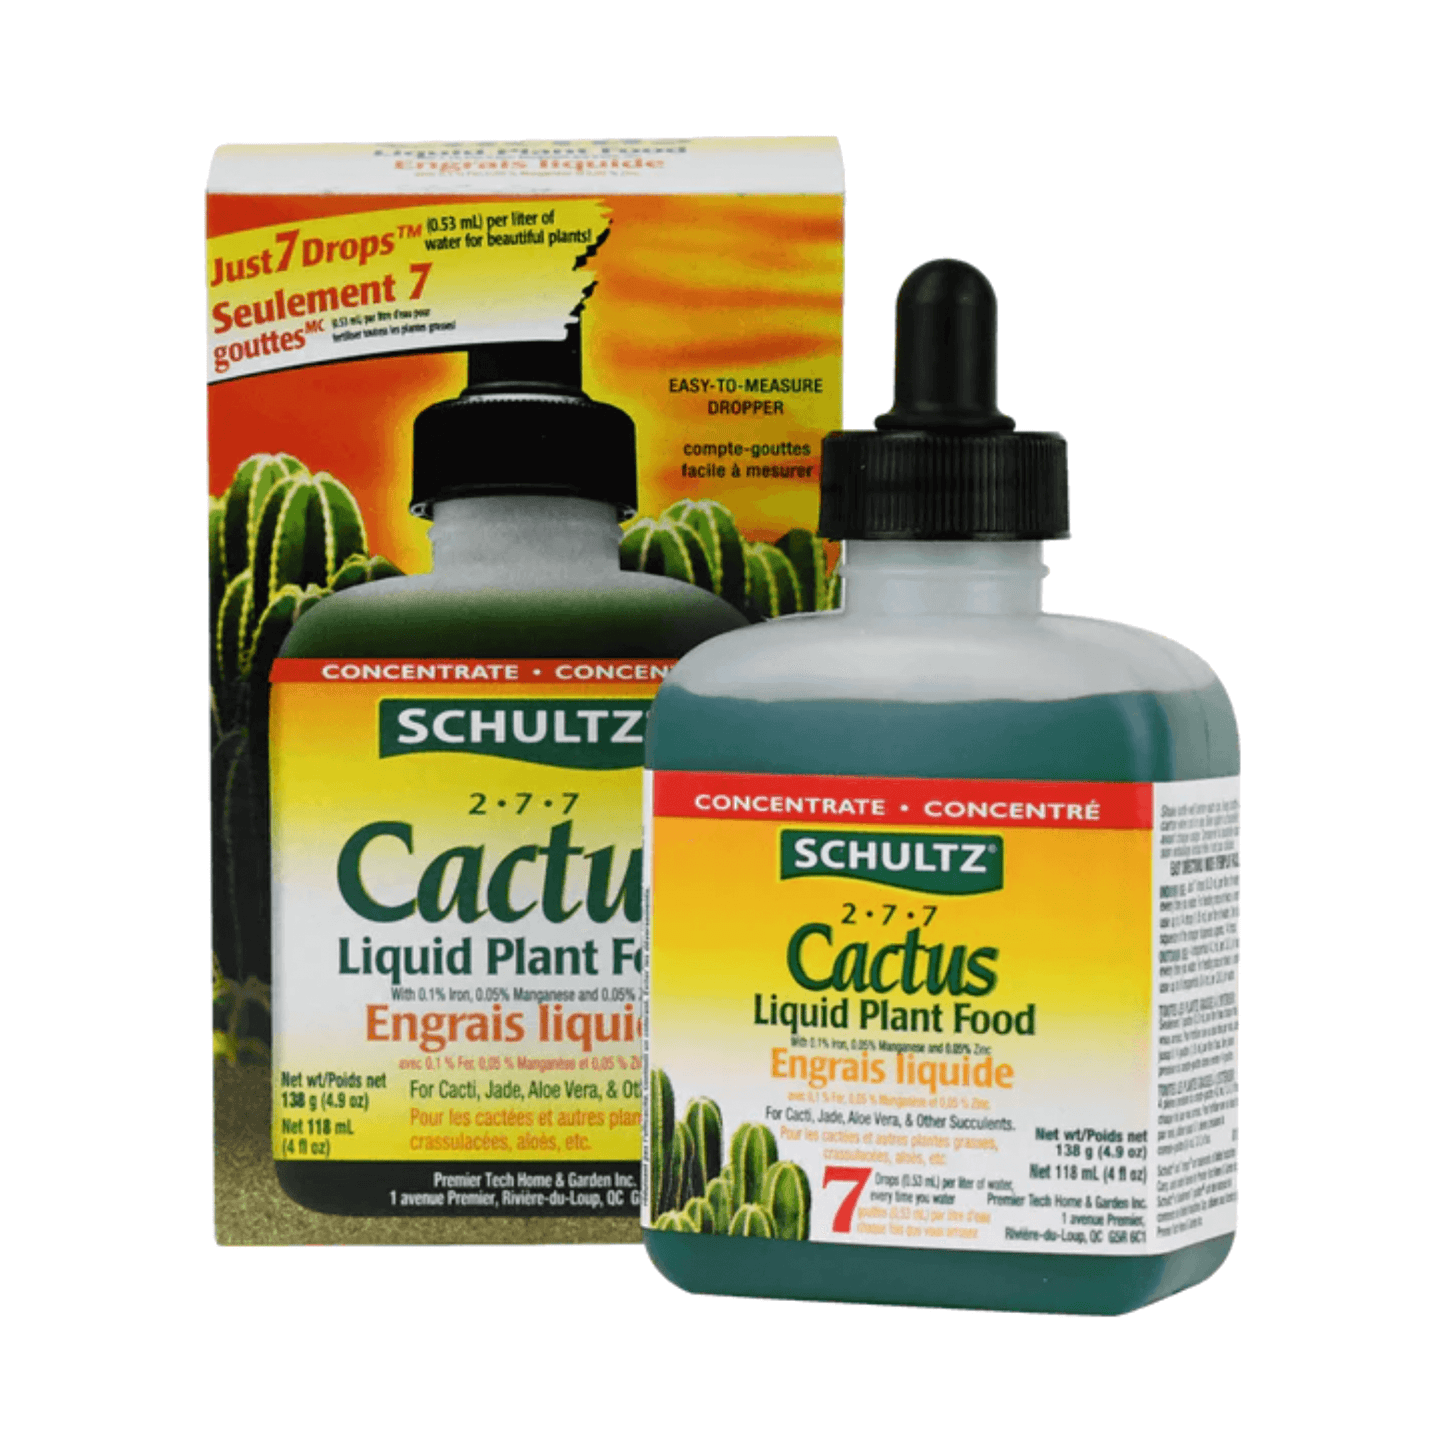 A bottle of Schultz Cactus Liquid Plant Food.